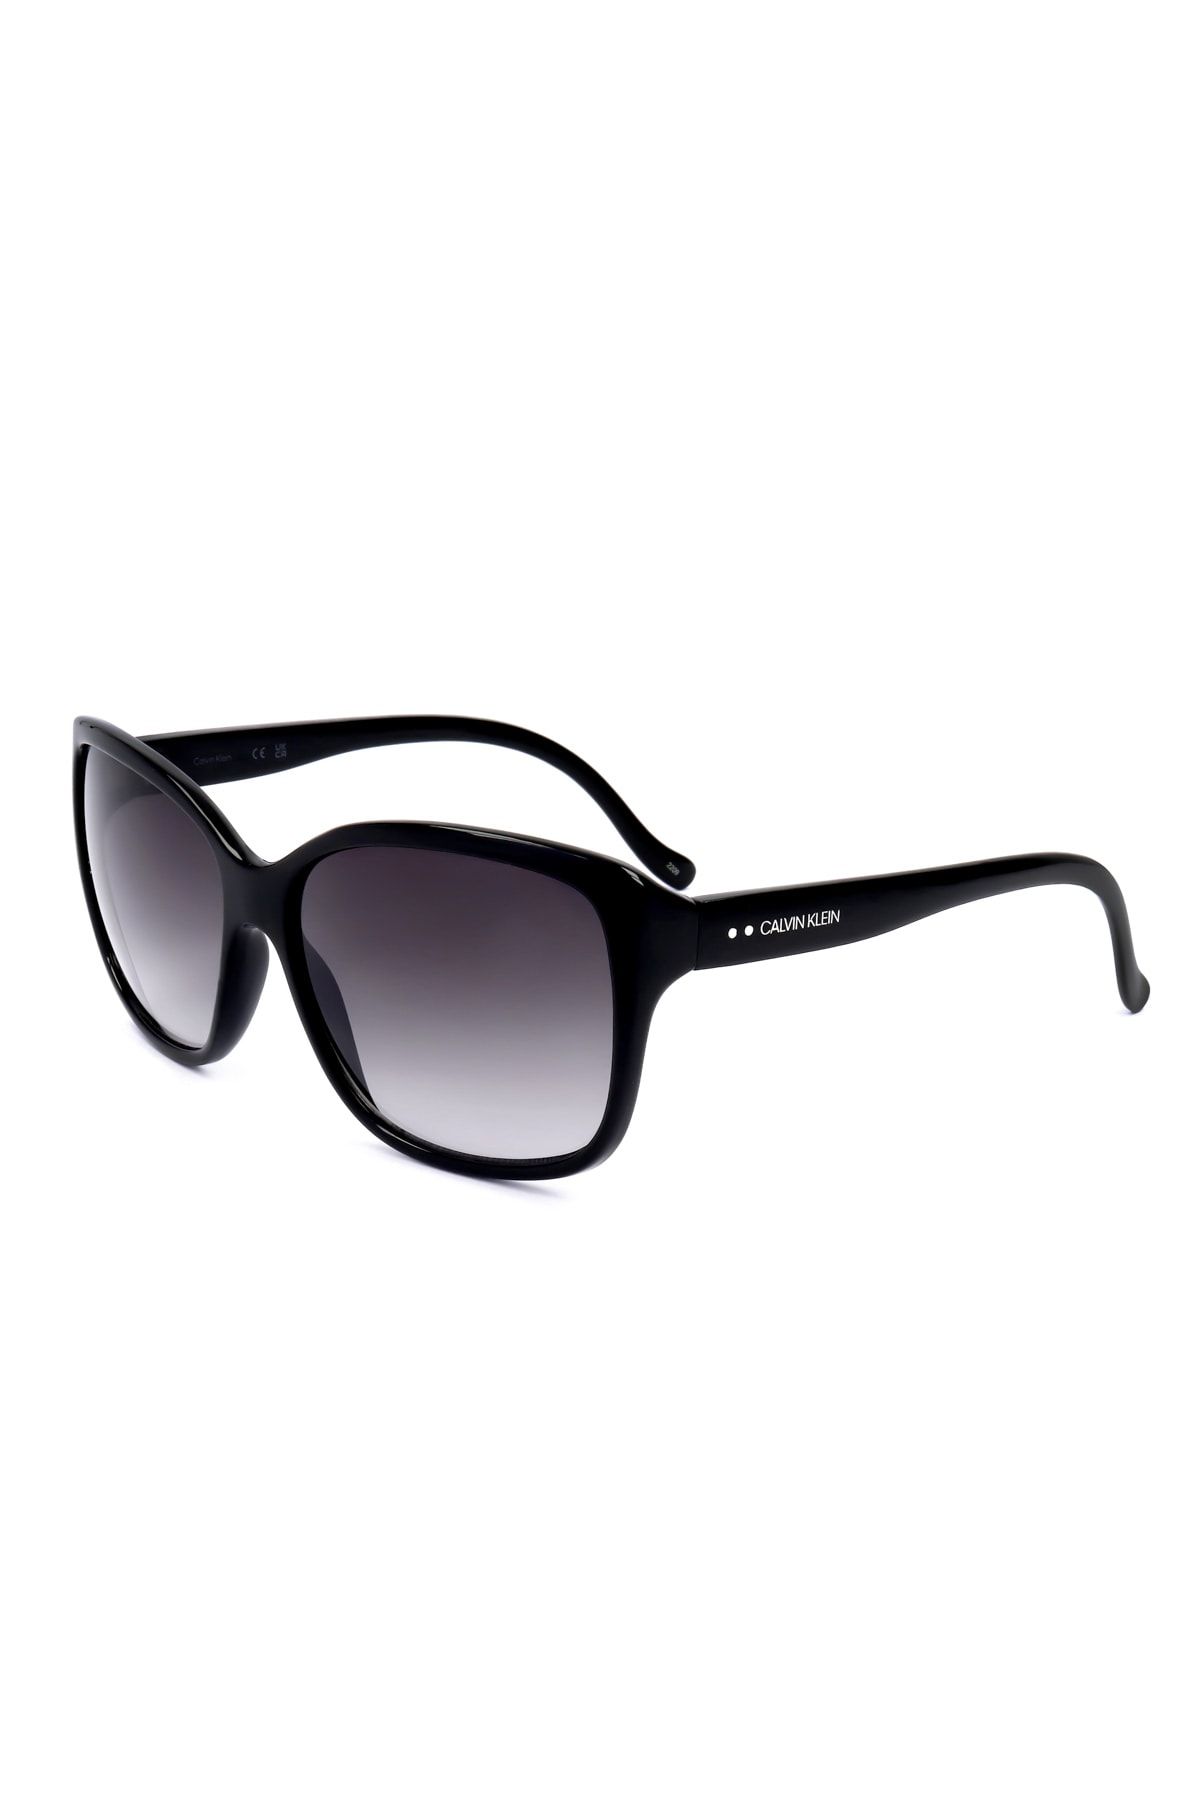 Calvin Klein Sonnenbrille - black/schwarz 